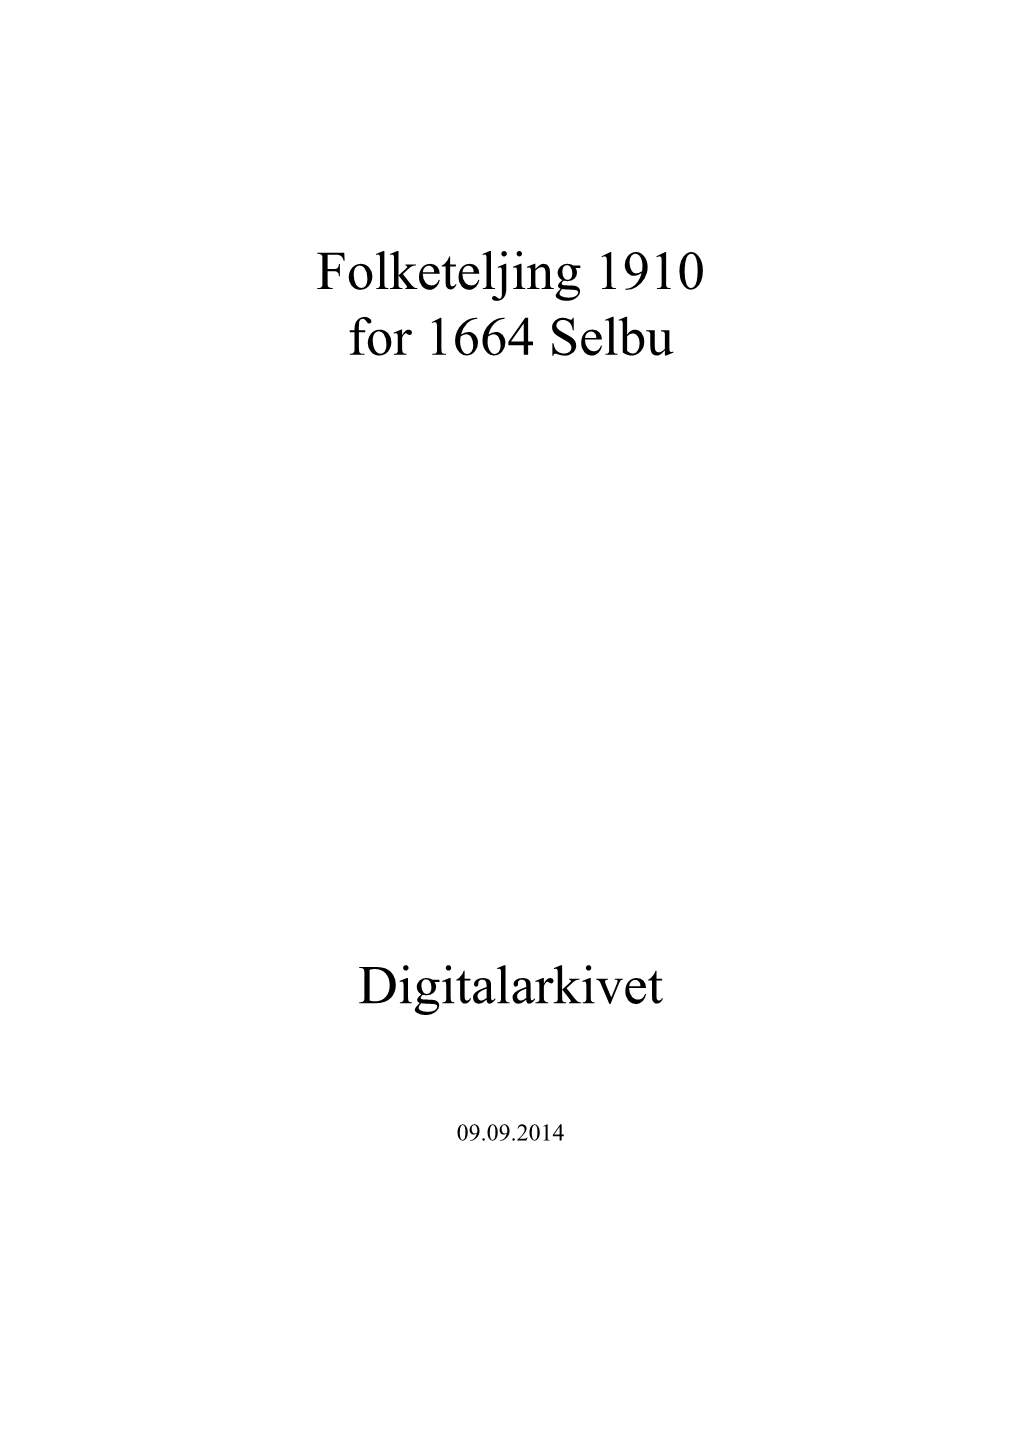 Folketeljing 1910 for 1664 Selbu Digitalarkivet